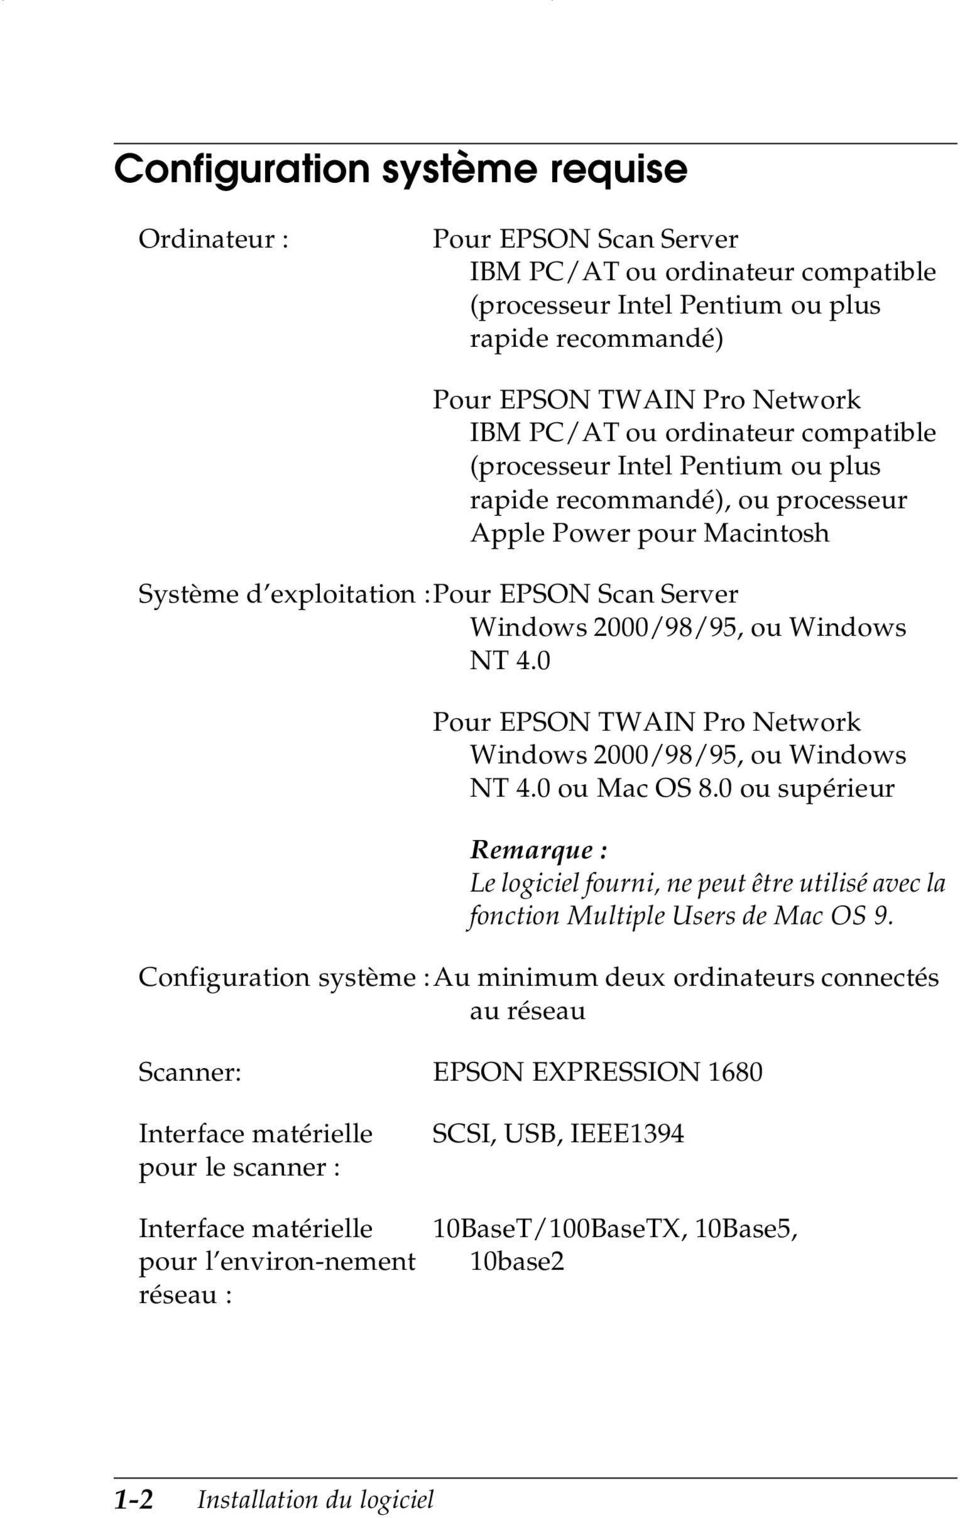 0 Pour EPSON TWAIN Pro Network Windows 2000/98/95, ou Windows NT 4.0 ou Mac OS 8.0 ou supérieur Remarque : Le logiciel fourni, ne peut être utilisé avec la fonction Multiple Users de Mac OS 9.